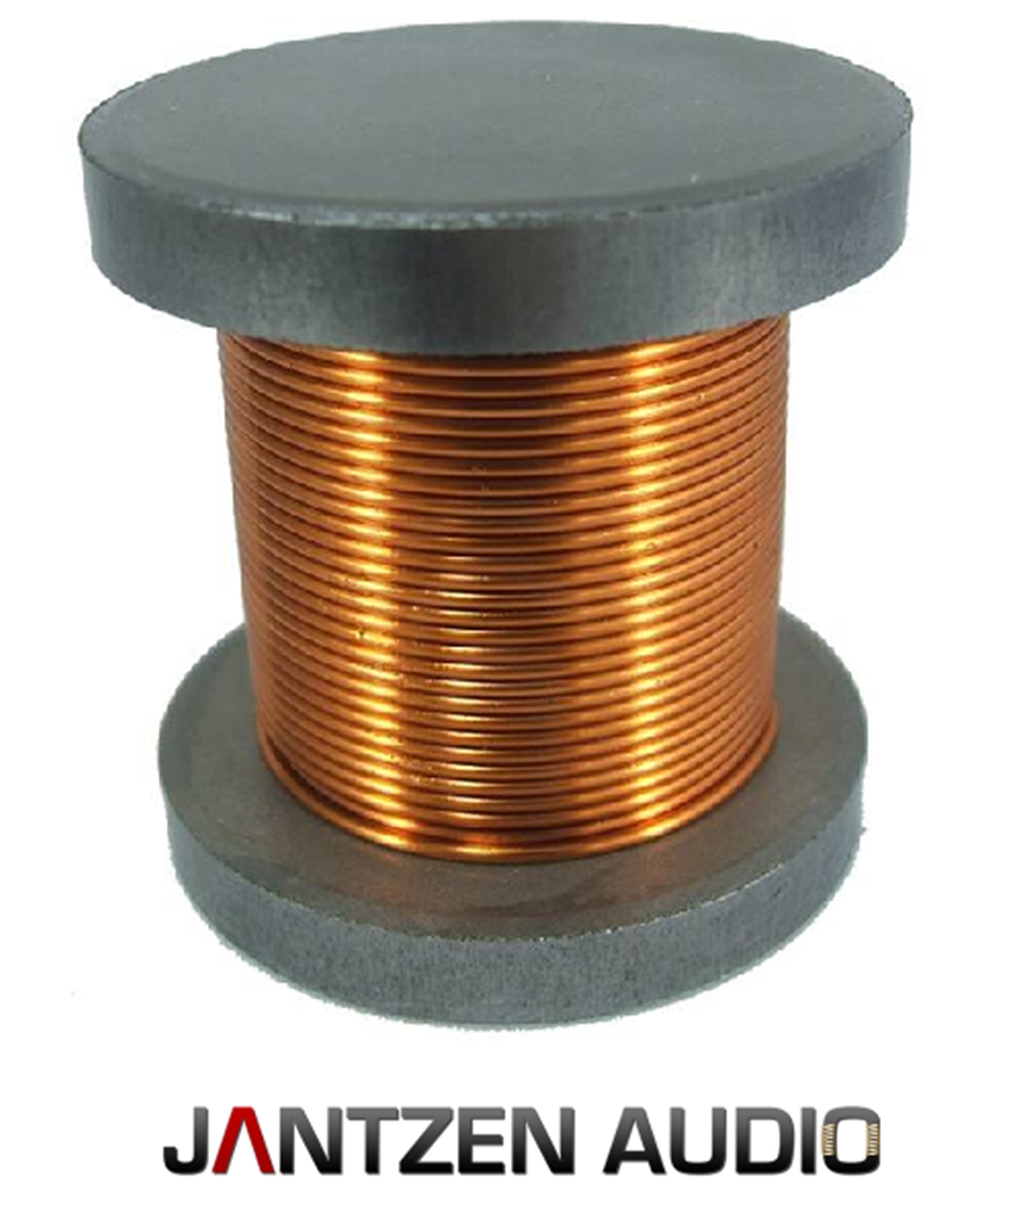 Катушка индуктивности купить. Катушка индуктивности Jantzen Iron Core Coil + Discs. Катушка индуктивности bn3m 20003a. Jantzen-Audio восковая катушка индуктор.